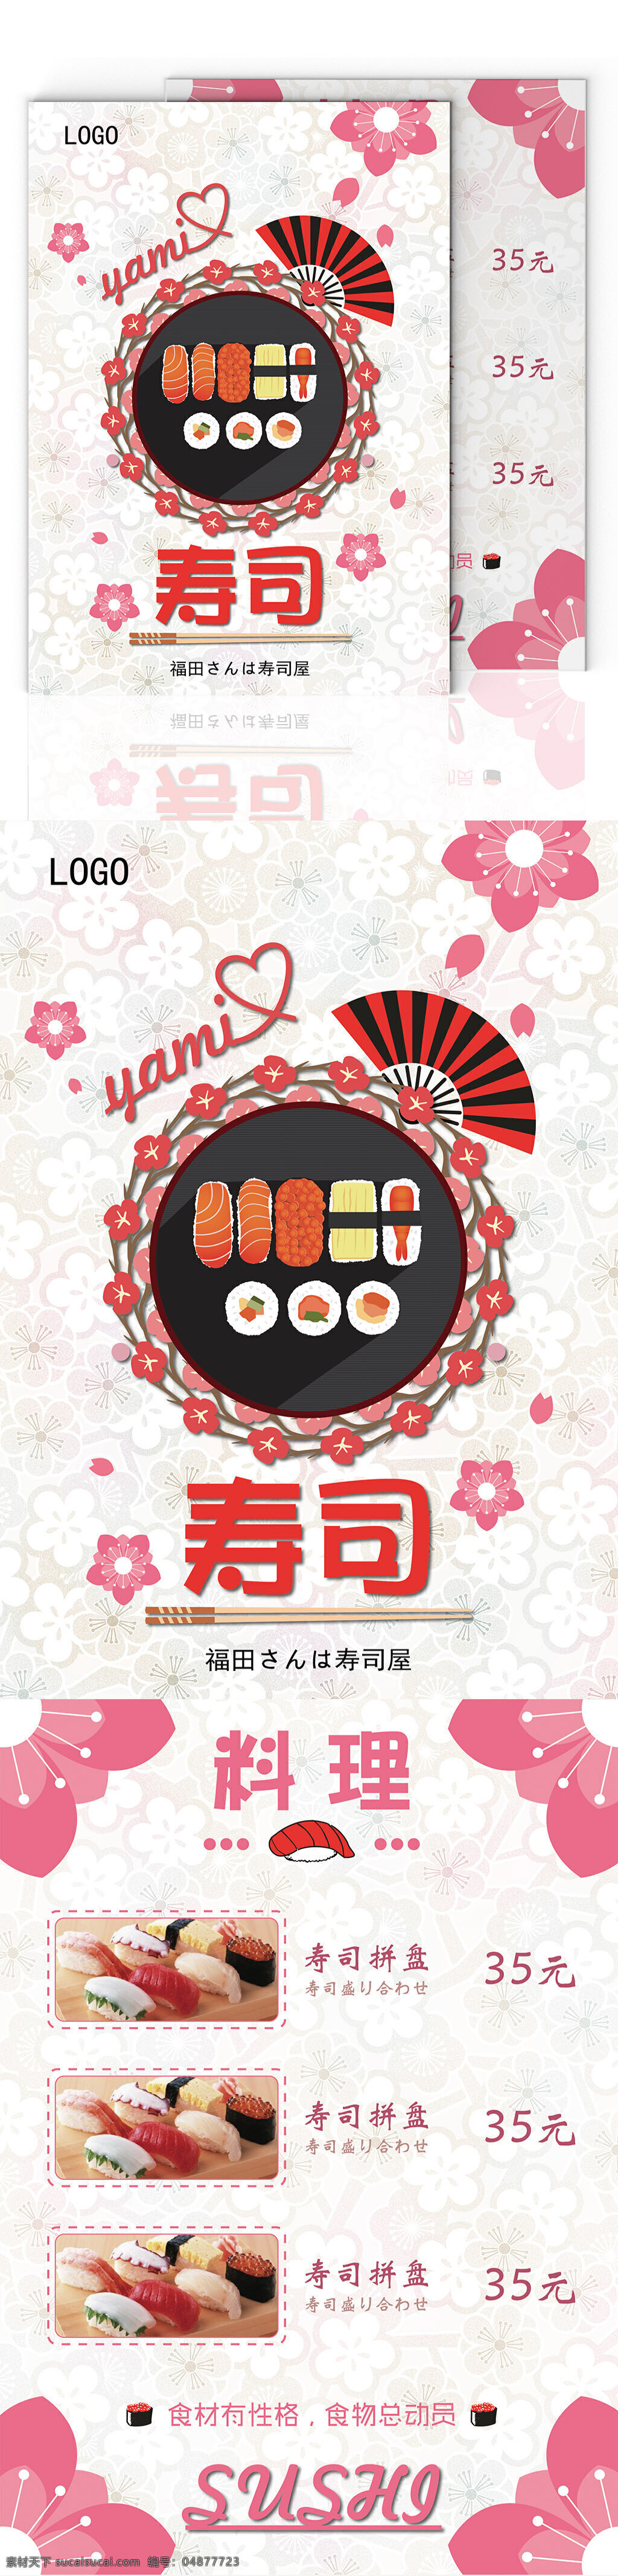 日式 料理 寿司 美食 菜单 小清新 寿司菜单 和风 粉色 日式料理